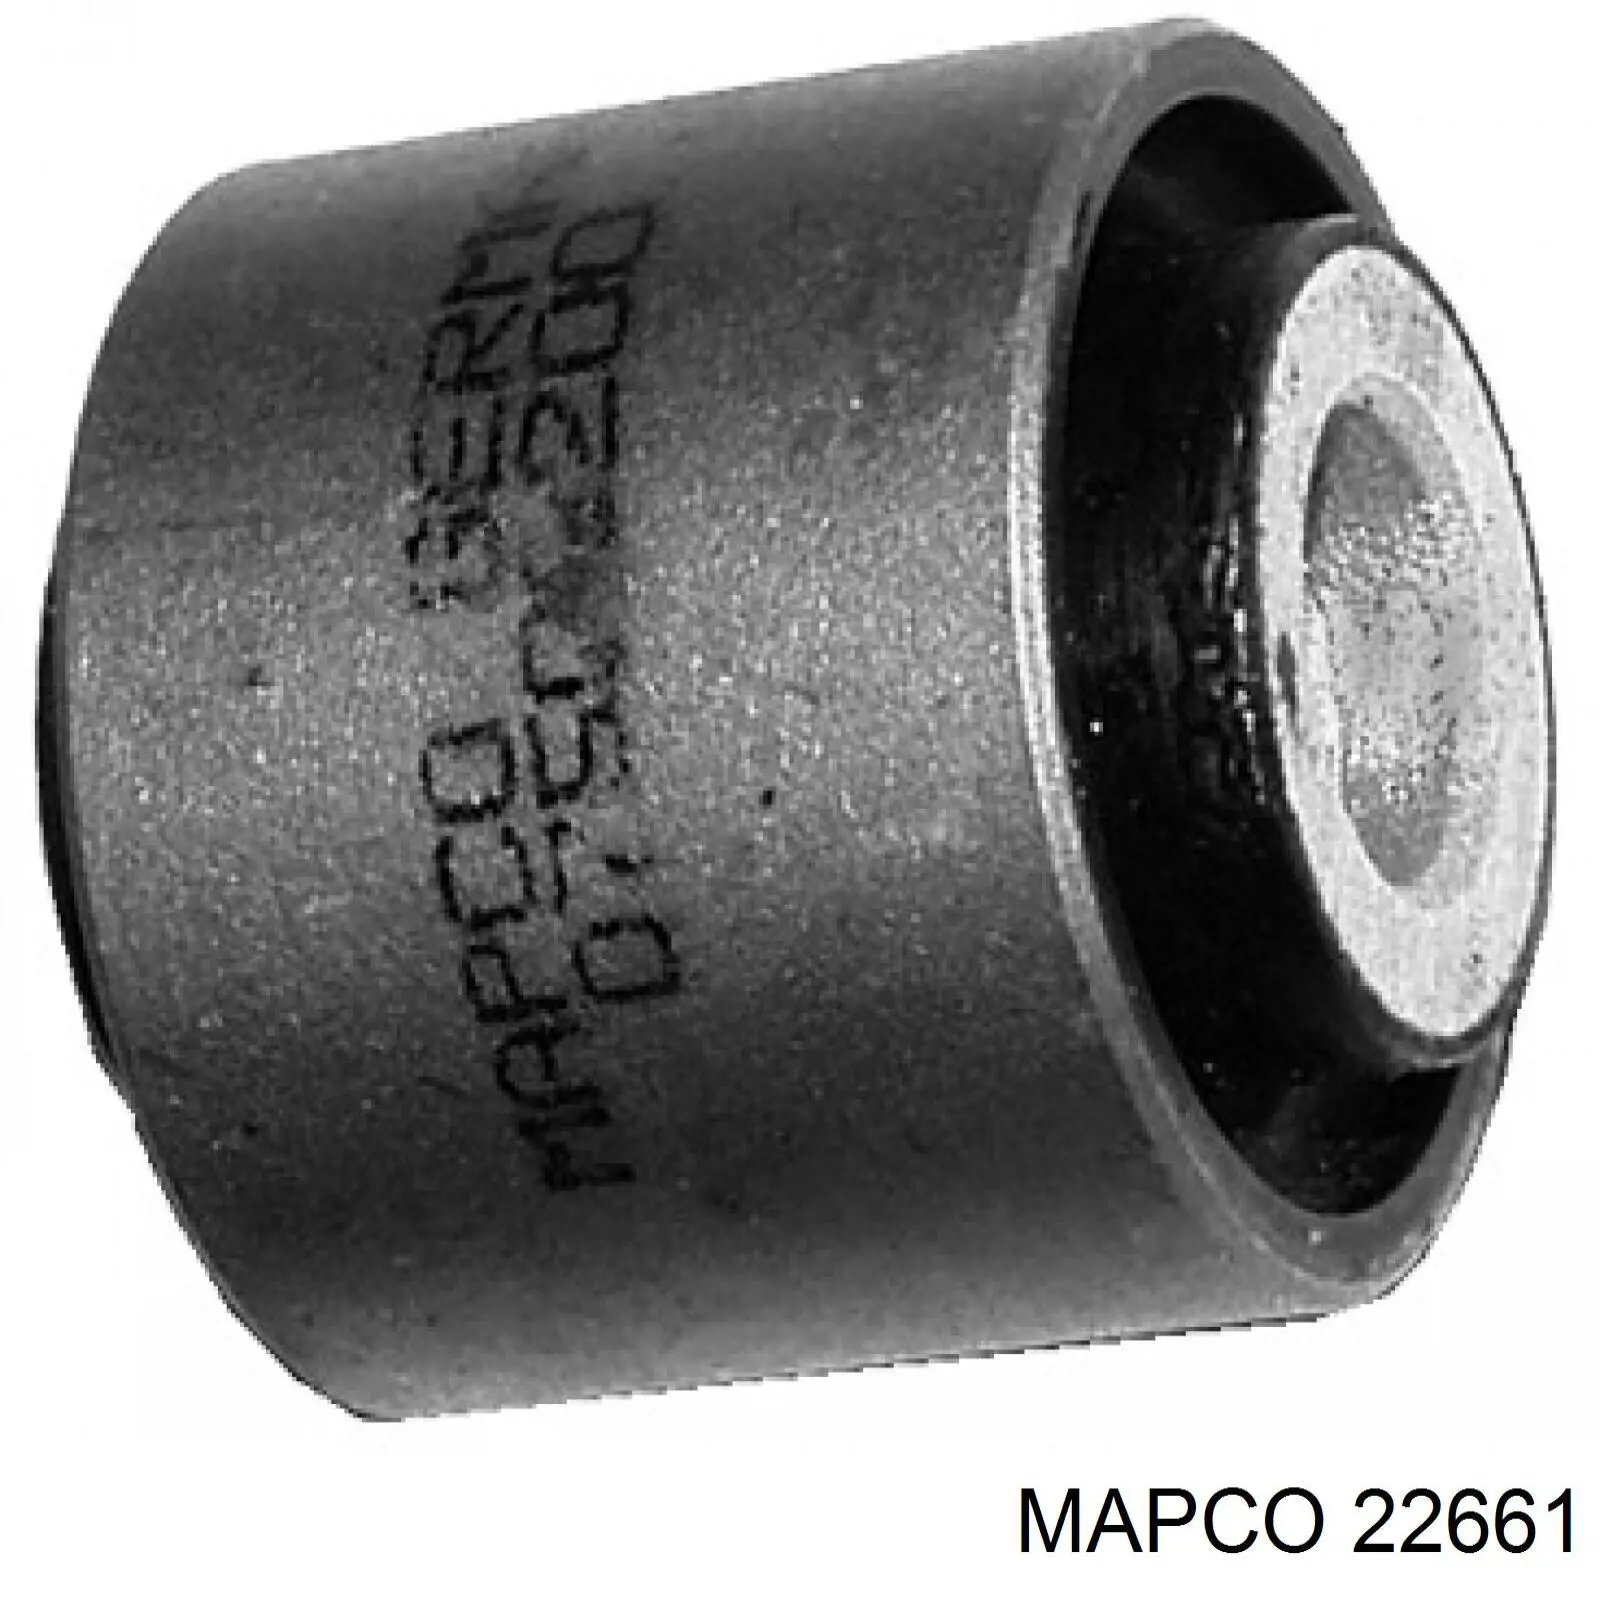 Bomba de combustible eléctrica sumergible 22661 Mapco